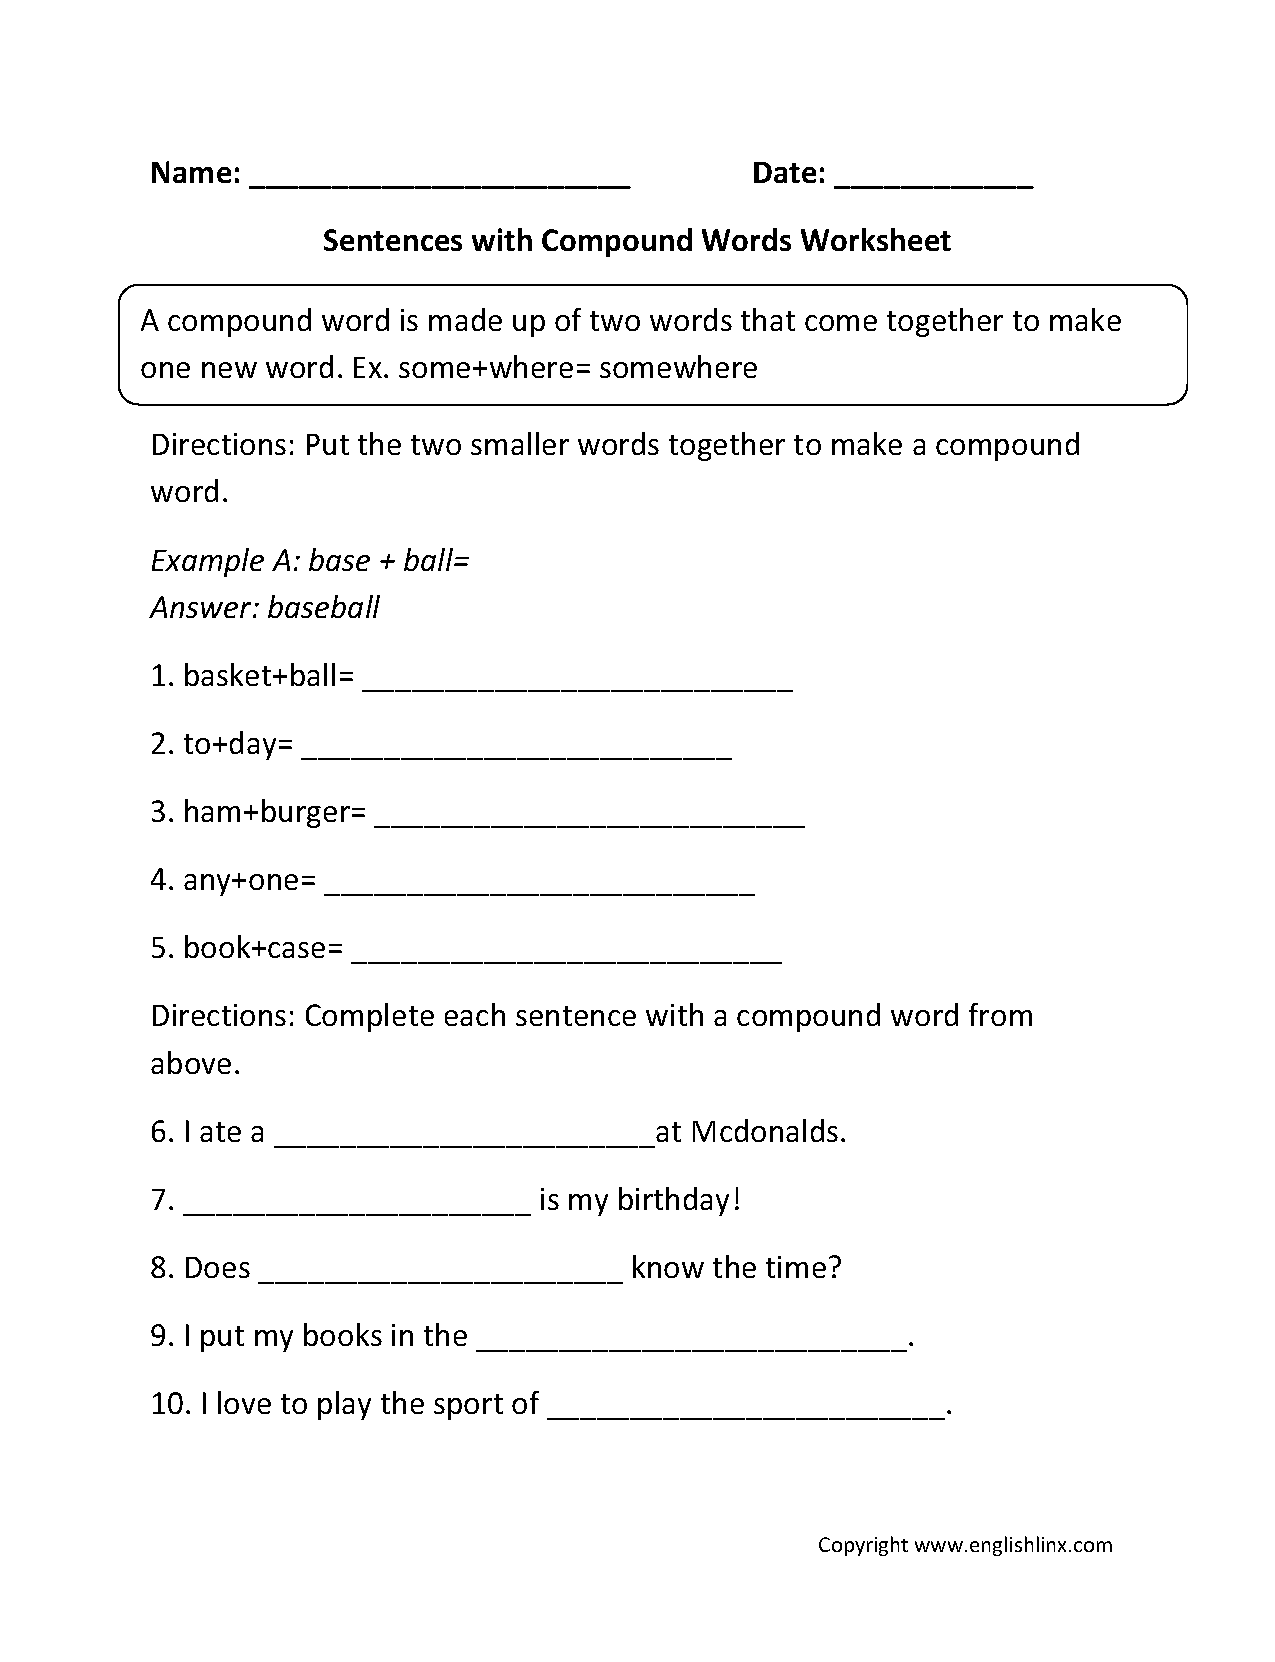 18-best-images-of-compound-sentences-worksheet-3rd-grade-compound-words-worksheets-sentences